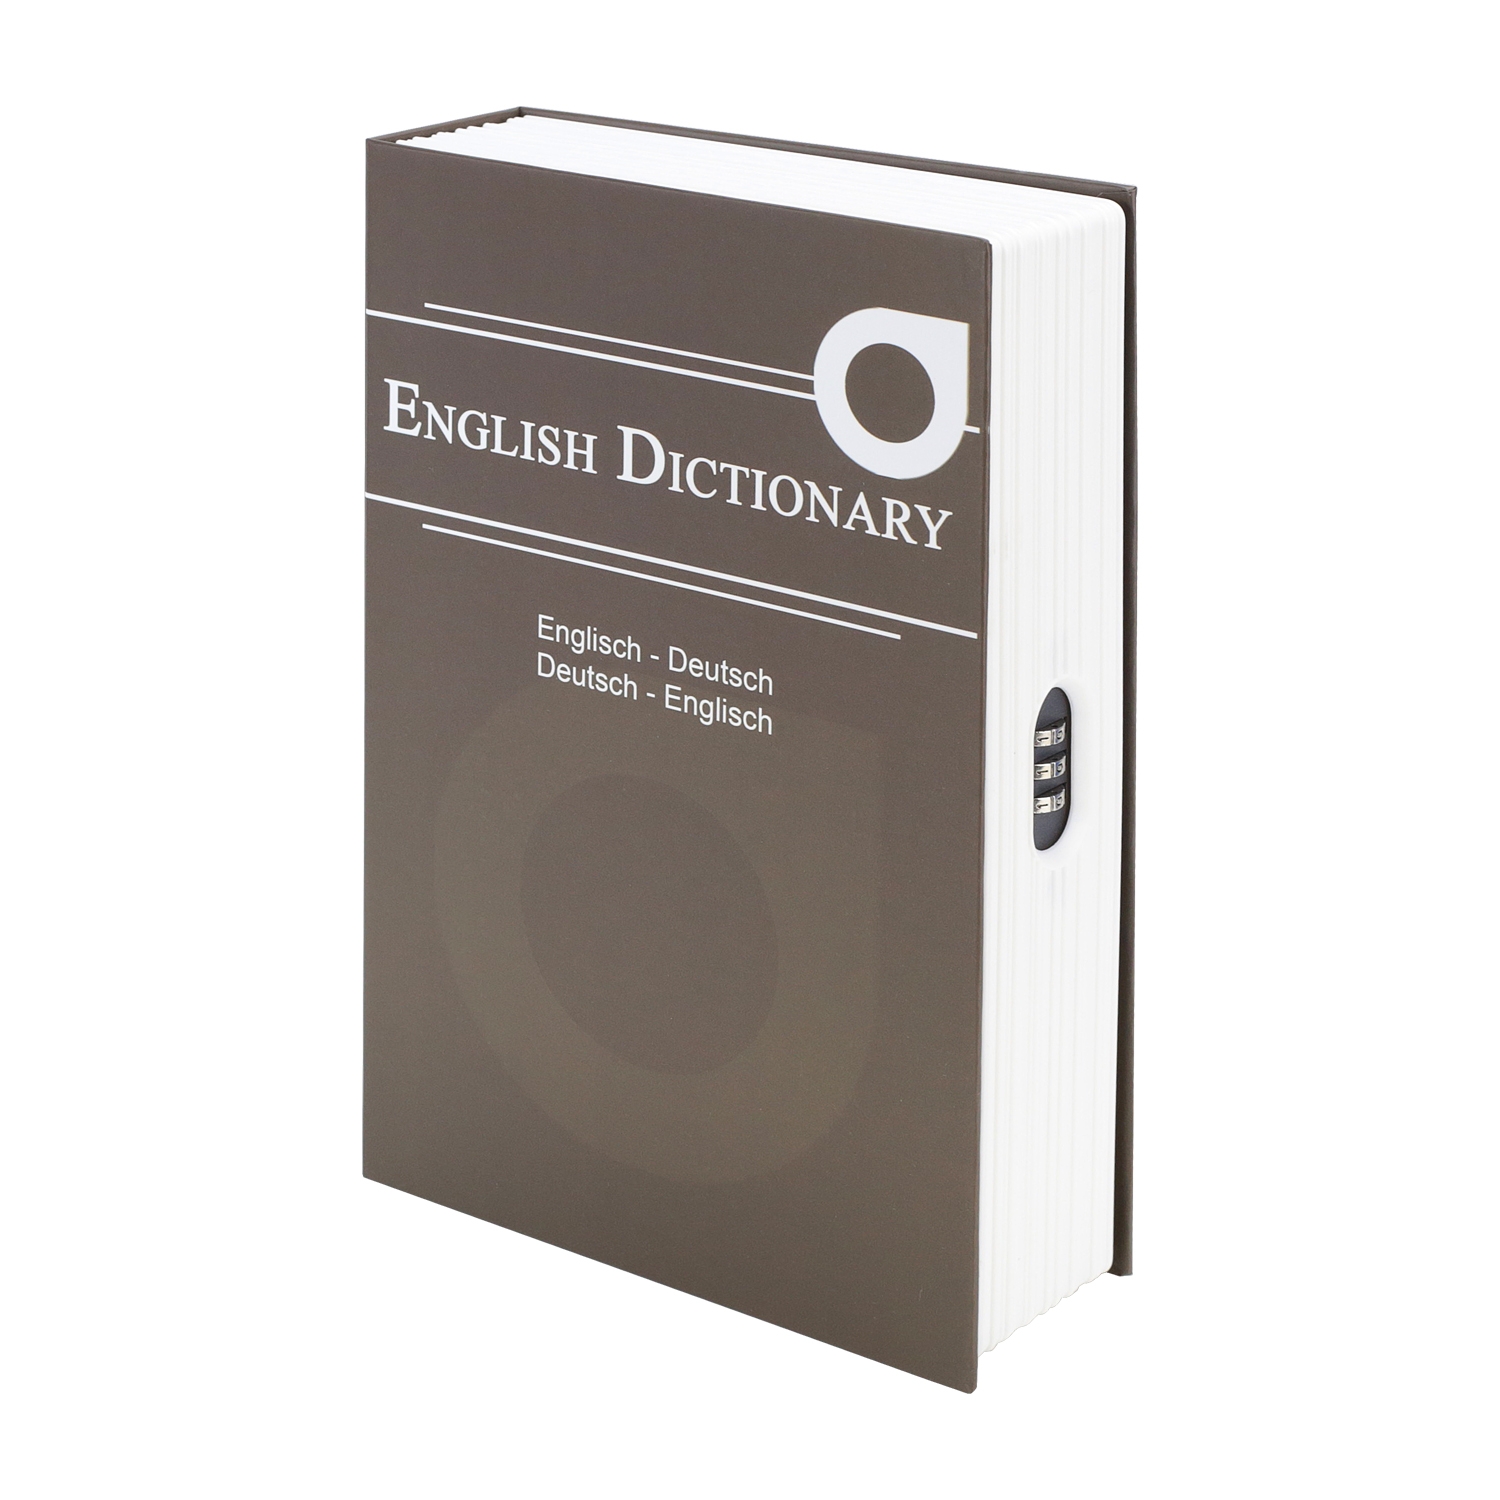 Buchtresor English Dictionary mit Zahlenschloss von HMF mit 23.5 cm Breite in Braun